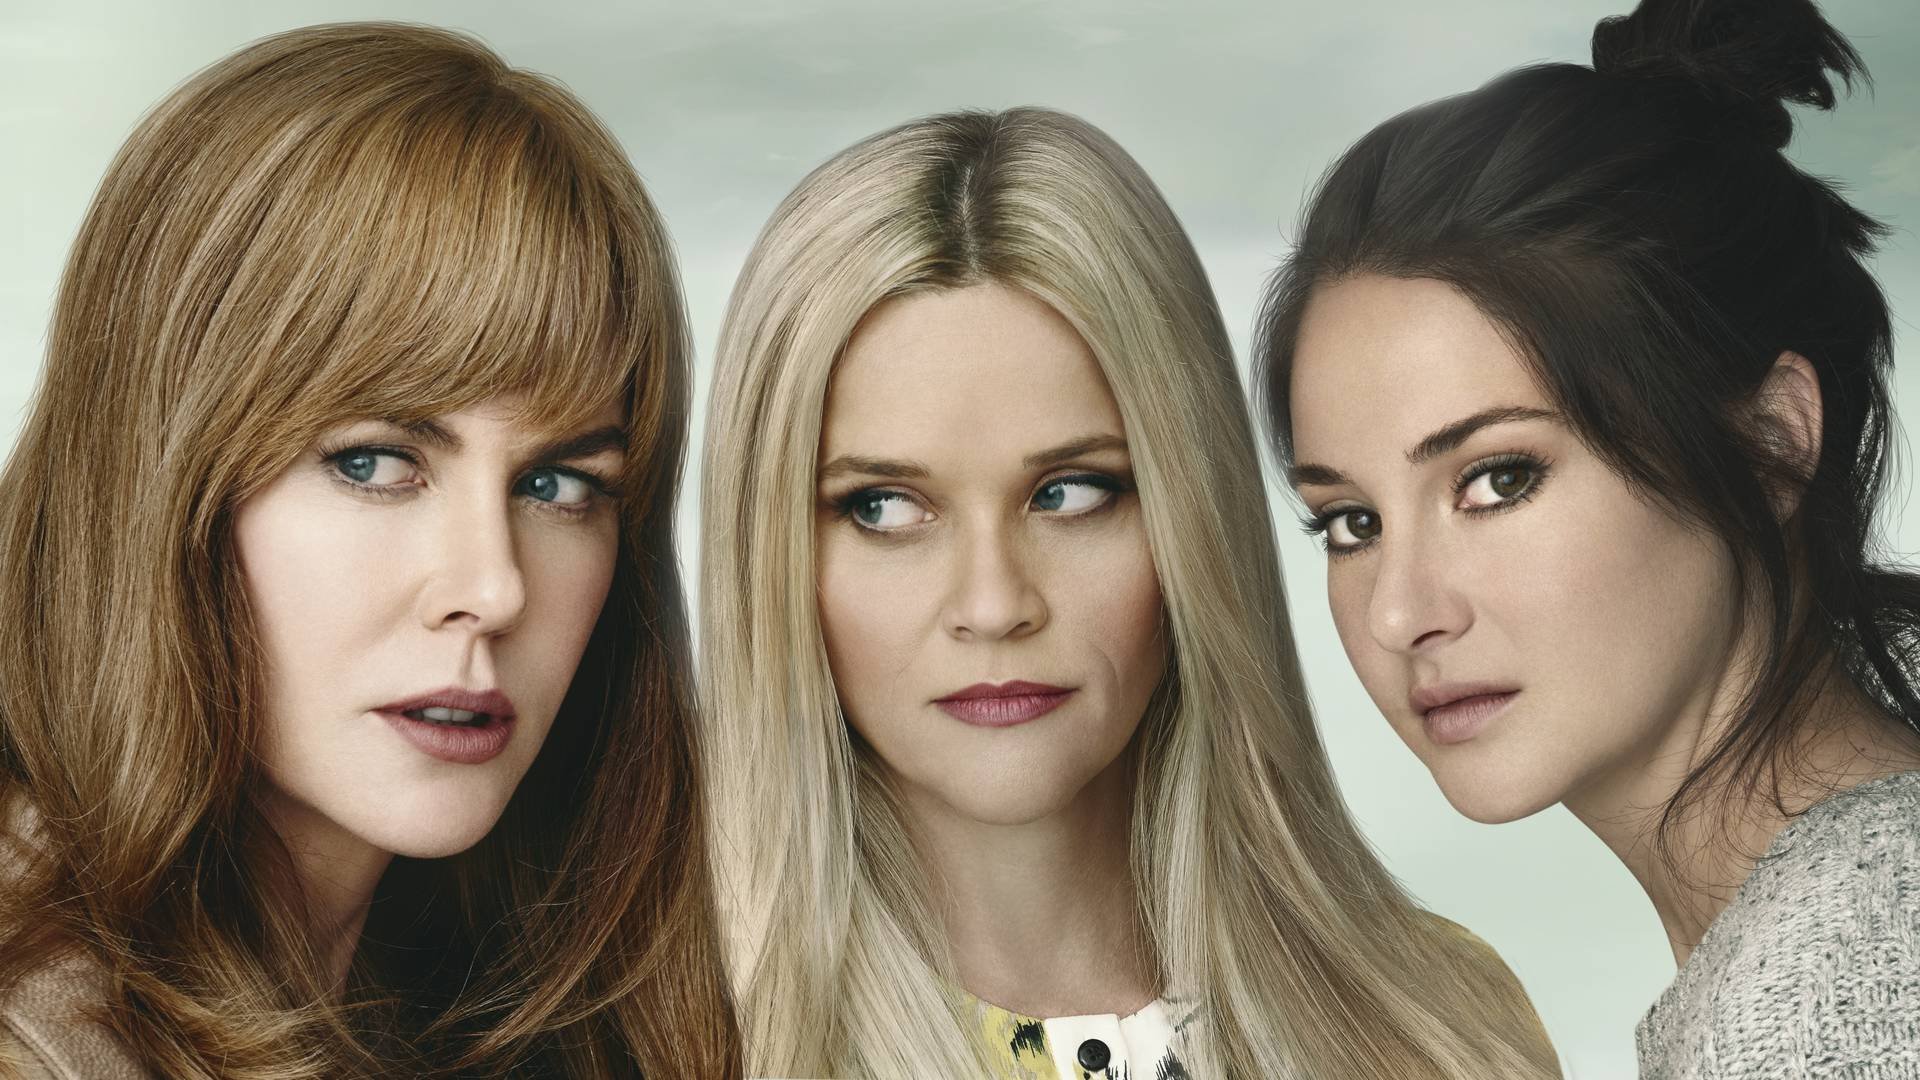 Los futuros episodios de la historia protagonizada por Reese Witherspoon, Nicole Kidman y Shailene Woodley, contará con nuevos personajes y tramas.